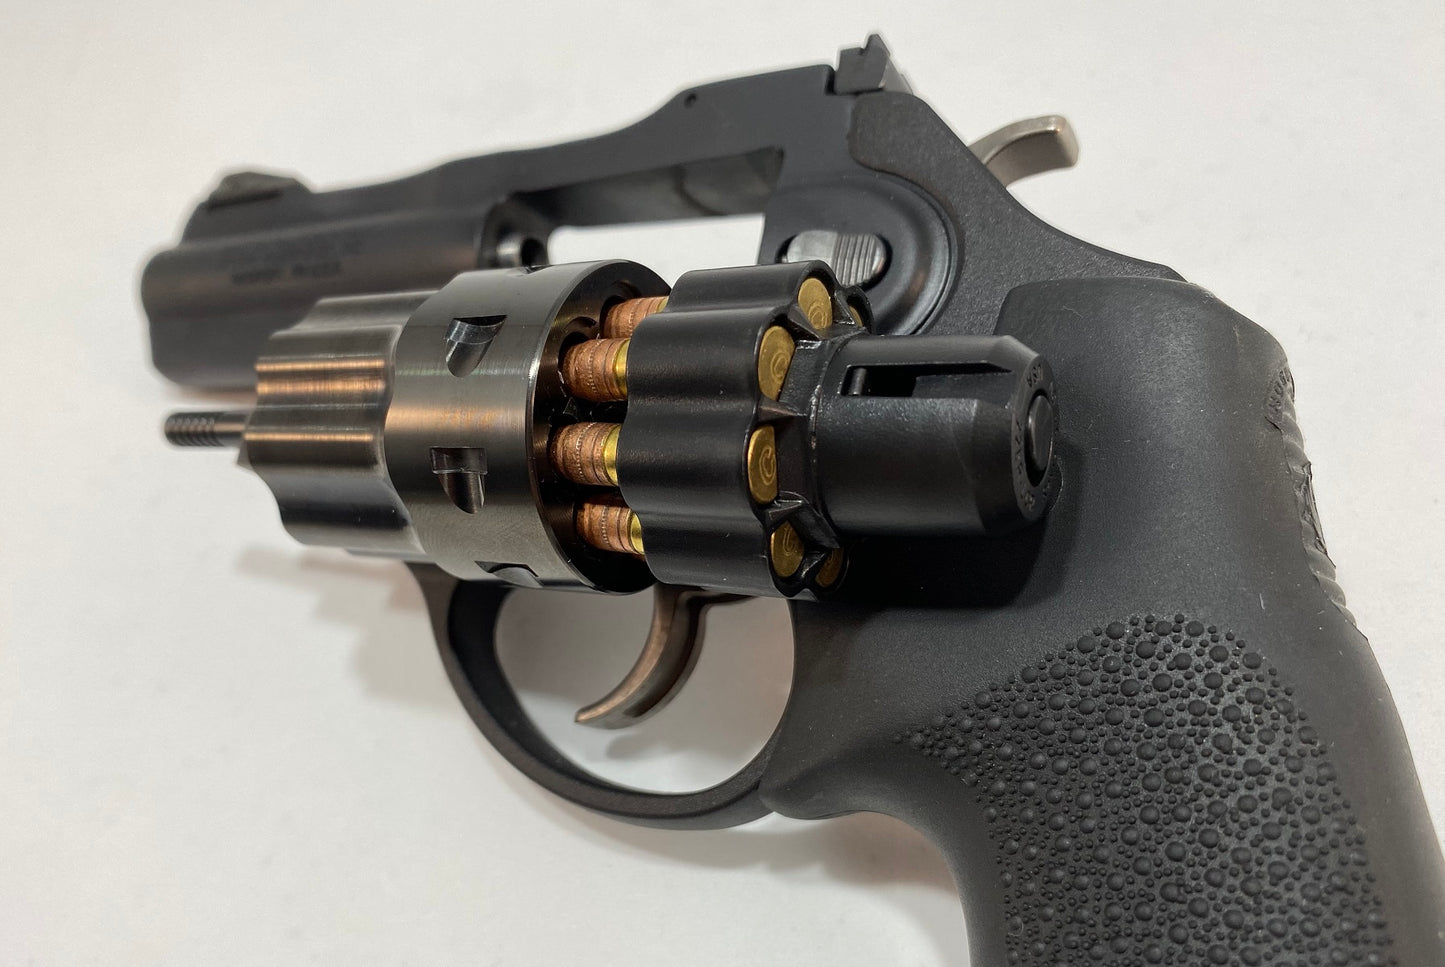 Caliber: 22LR, Loader for 8-Shot, Ruger LCR / LCRx revolvers